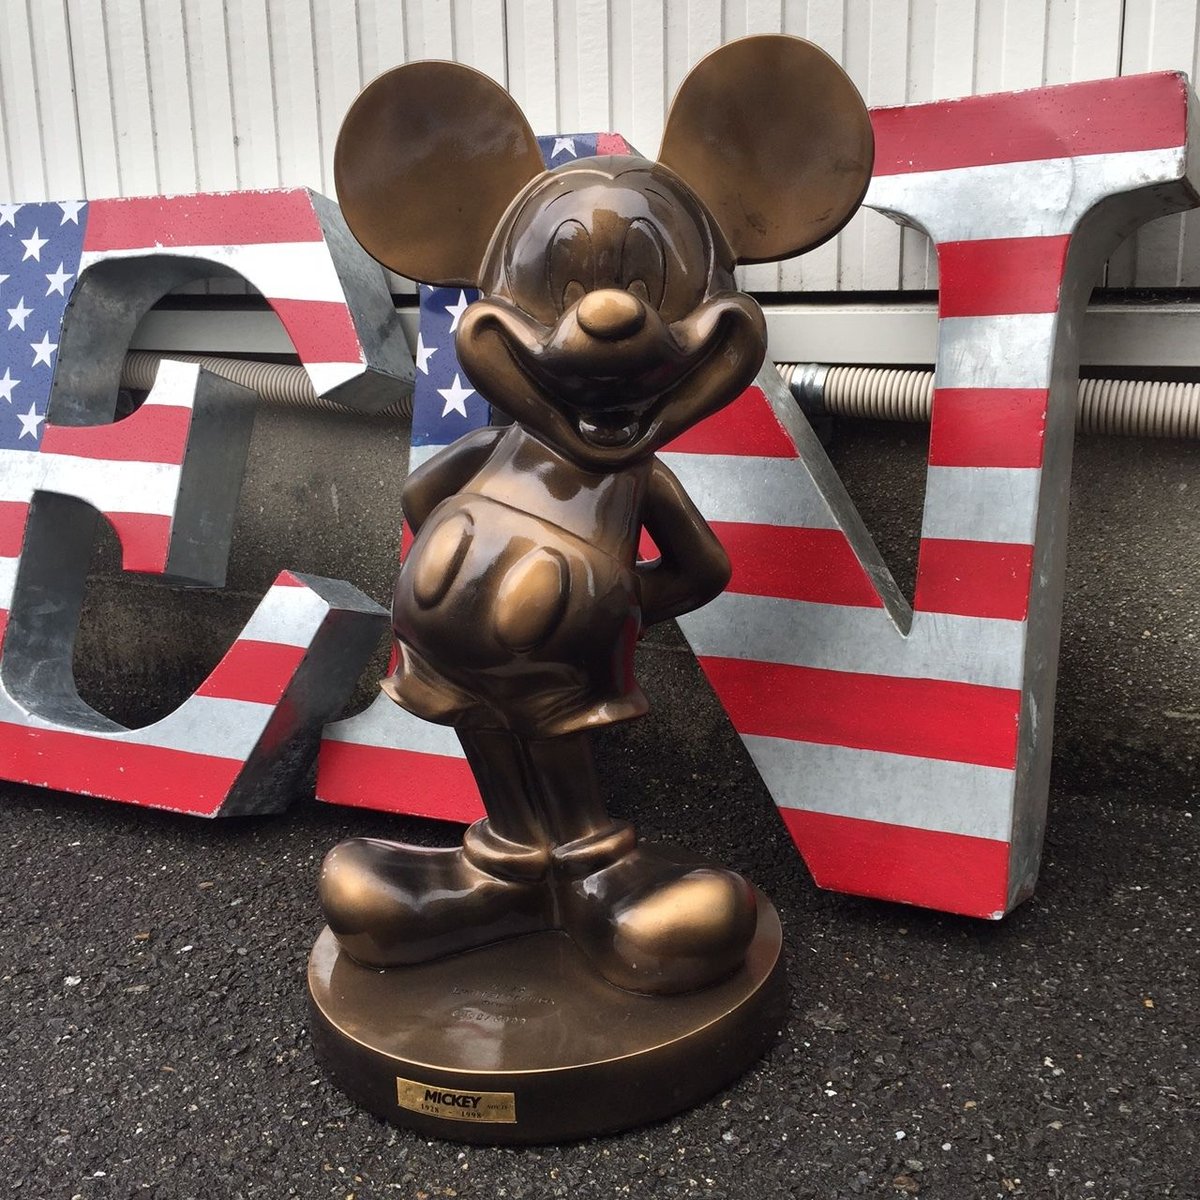 ミッキー 巨大ブロンズ像 ディズニー 1000体限定 銅像 ミッキーマウス 